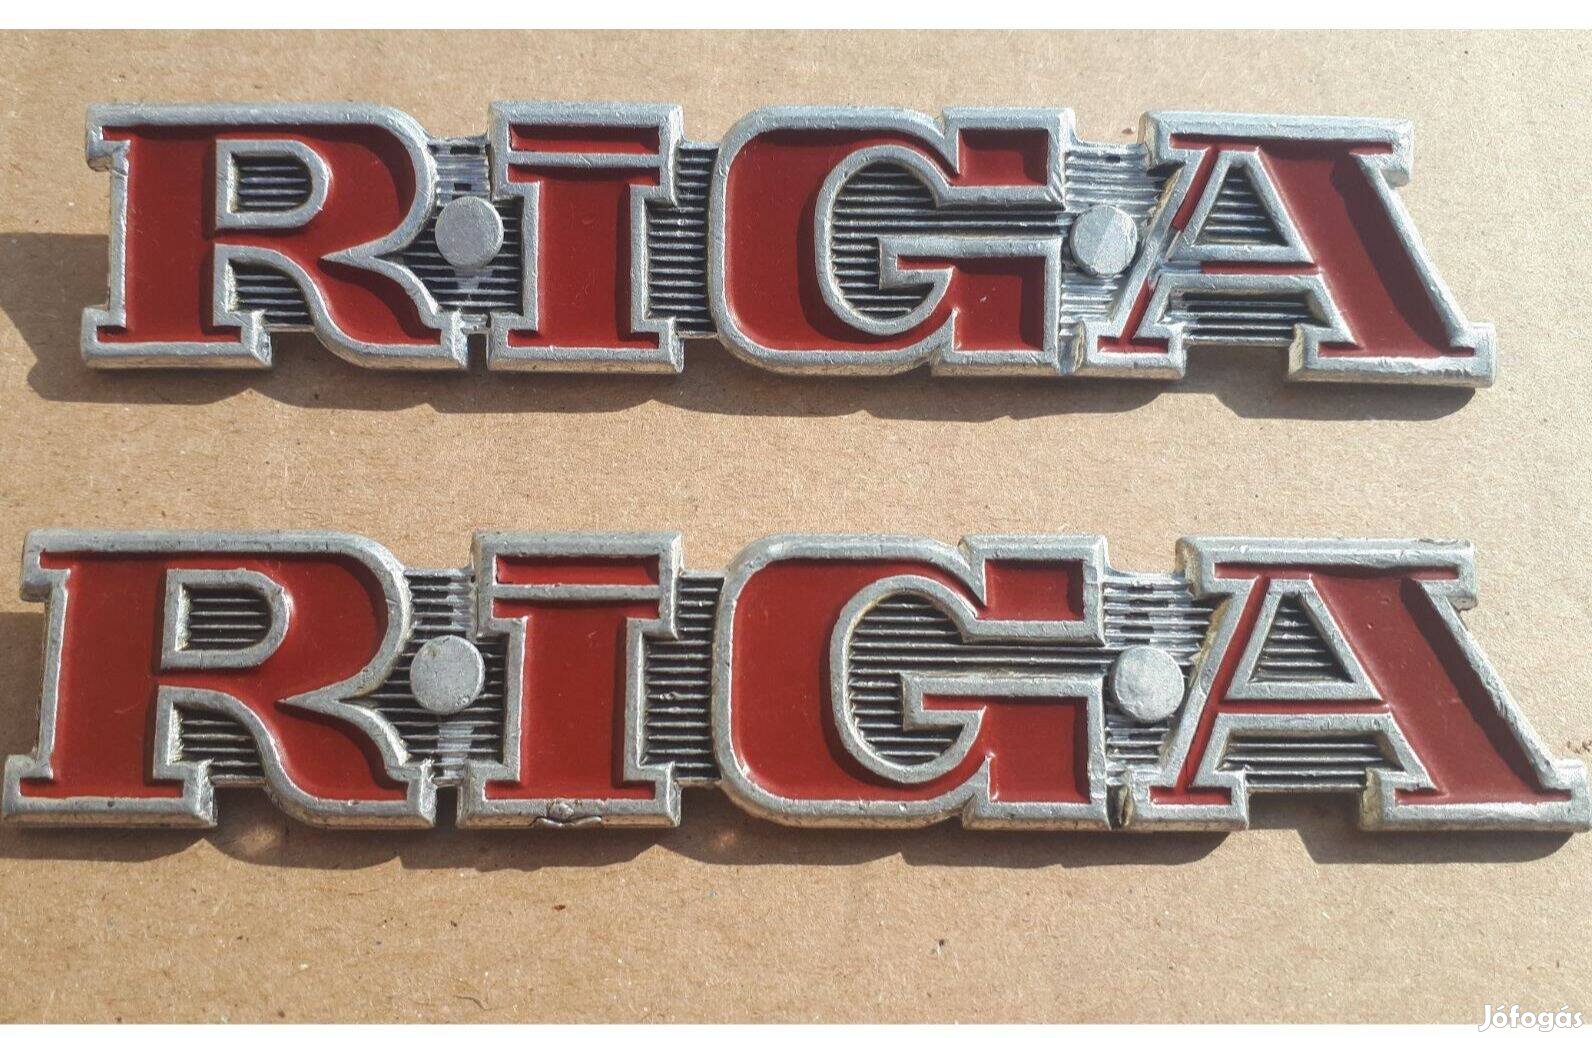 Riga 12, Riga 16, Riga 22 moped, eredeti váz logó